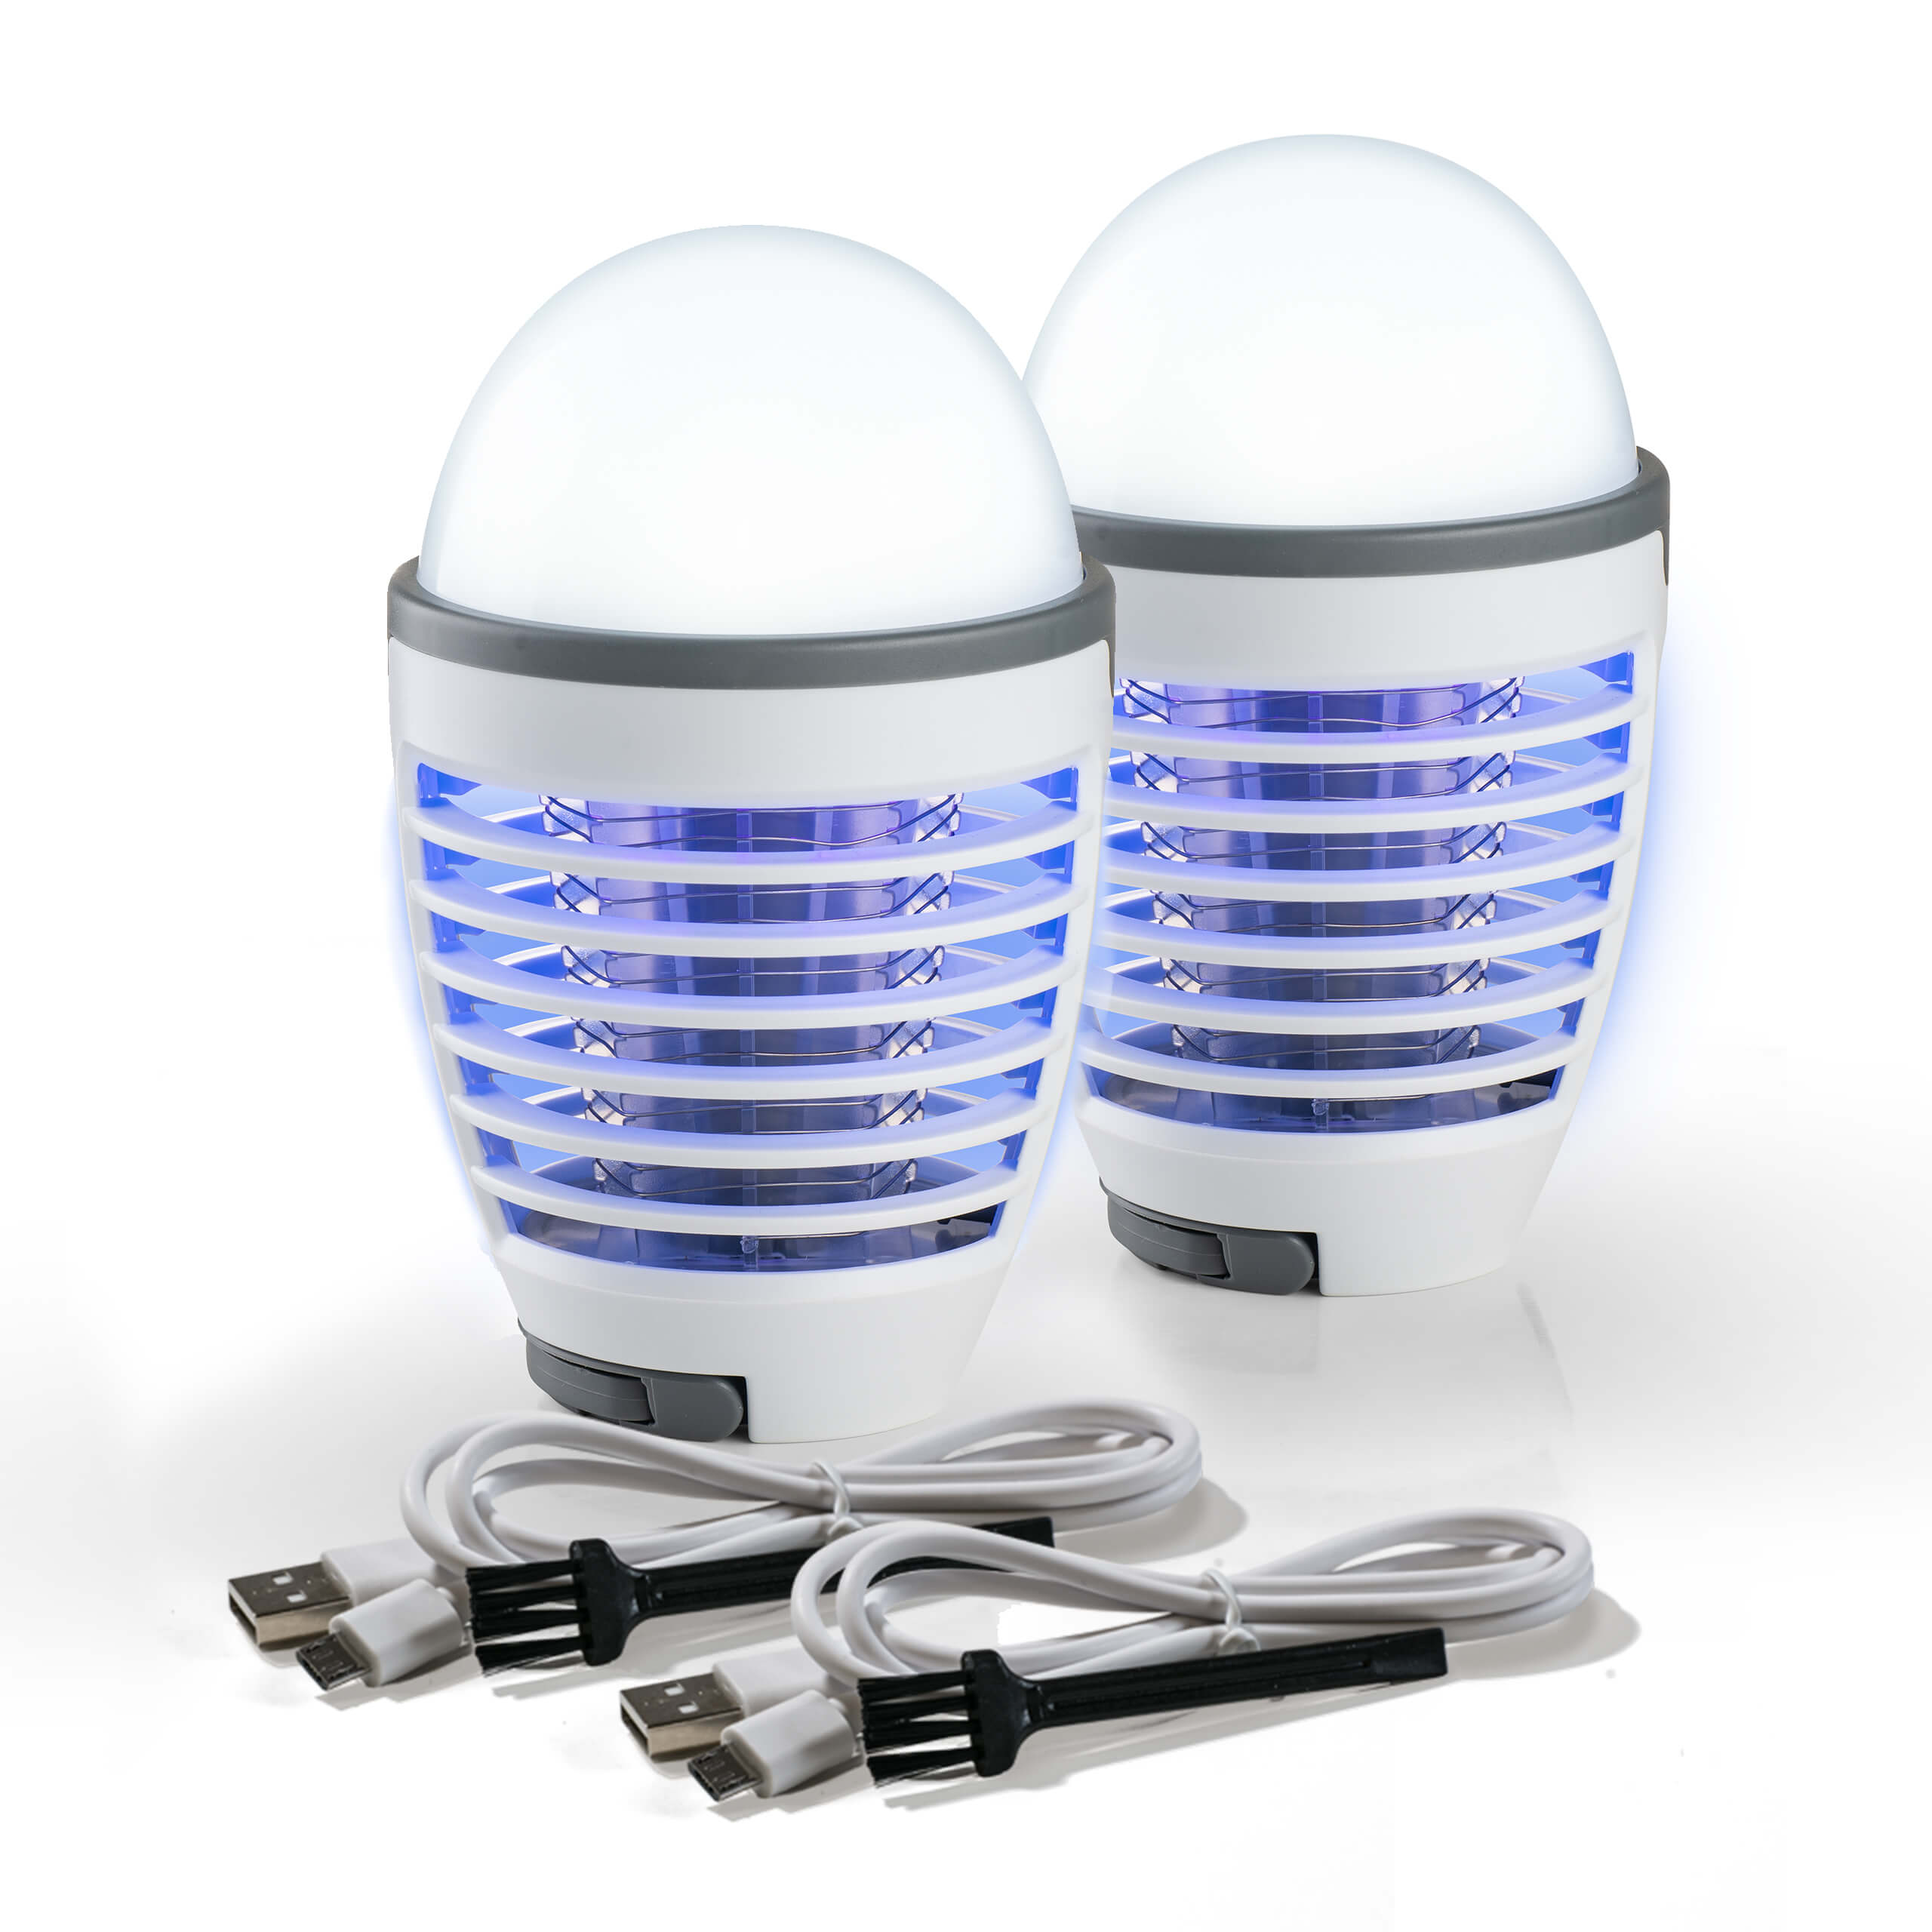 Details about   Moskito Killer Insektenvernichter USB Elektrisch UV Mückenfalle Licht-LED TOP